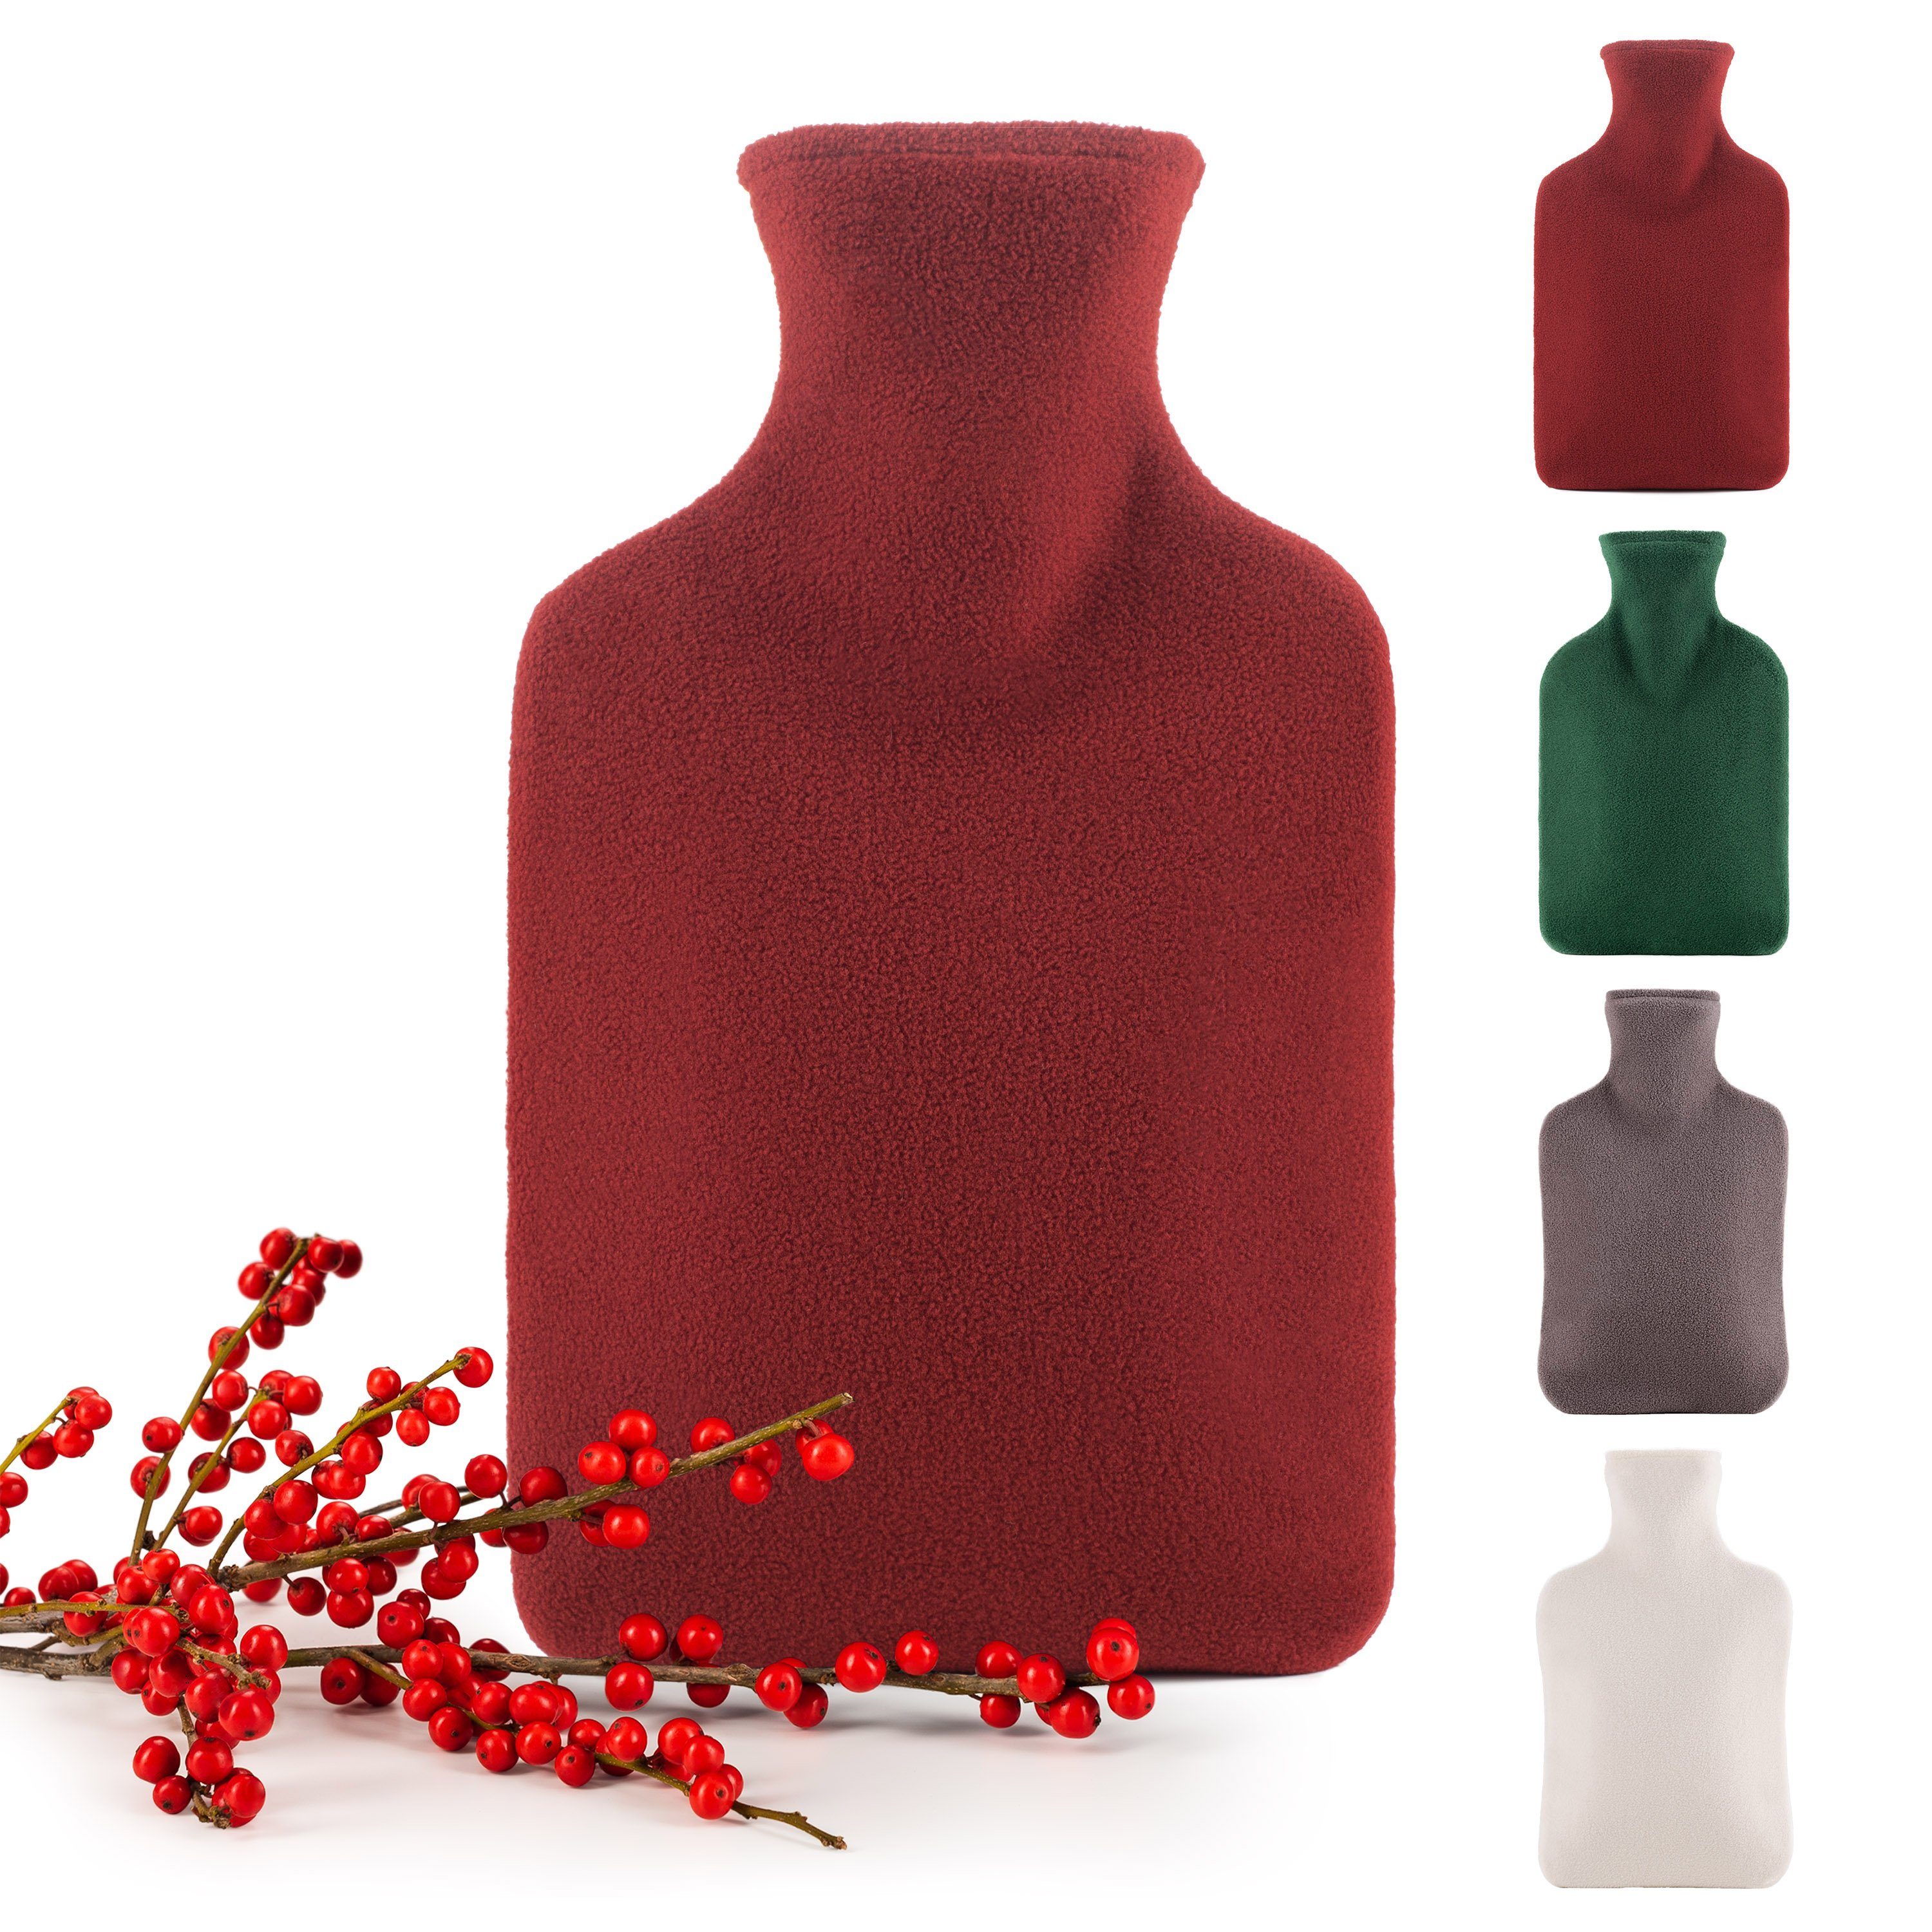 Blumtal Wärmflasche mit Bezug aus Polar Fleece, (für Kinder und Erwachsene, Bettflasche zur Schmerzlinderung, aus Naturkautschuk für Kinder und Erwachsene)